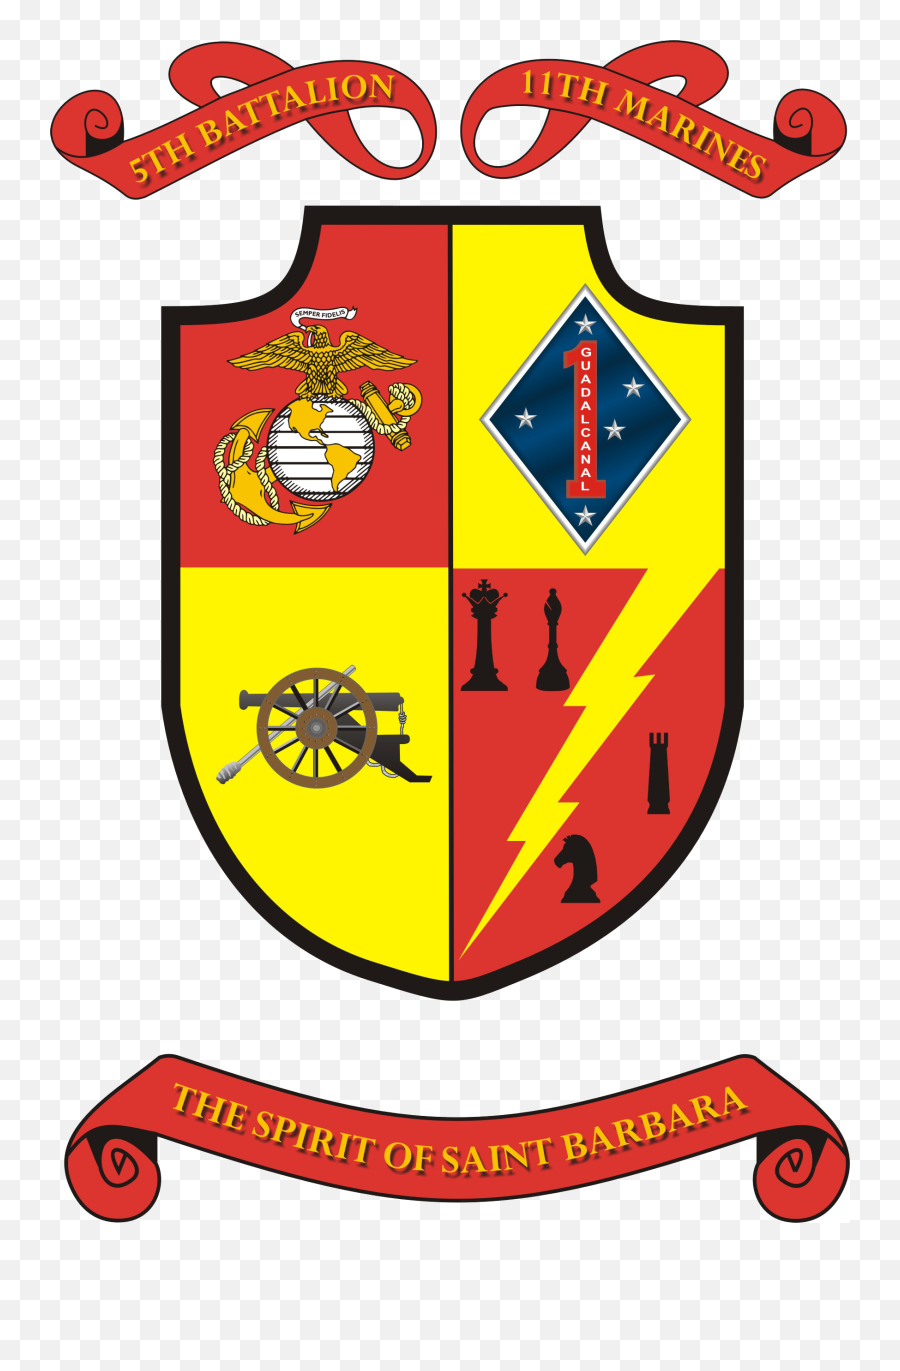 5th Battalion 11th Marines - 5th Battalion 11th Marines Emoji,Usmc Logo